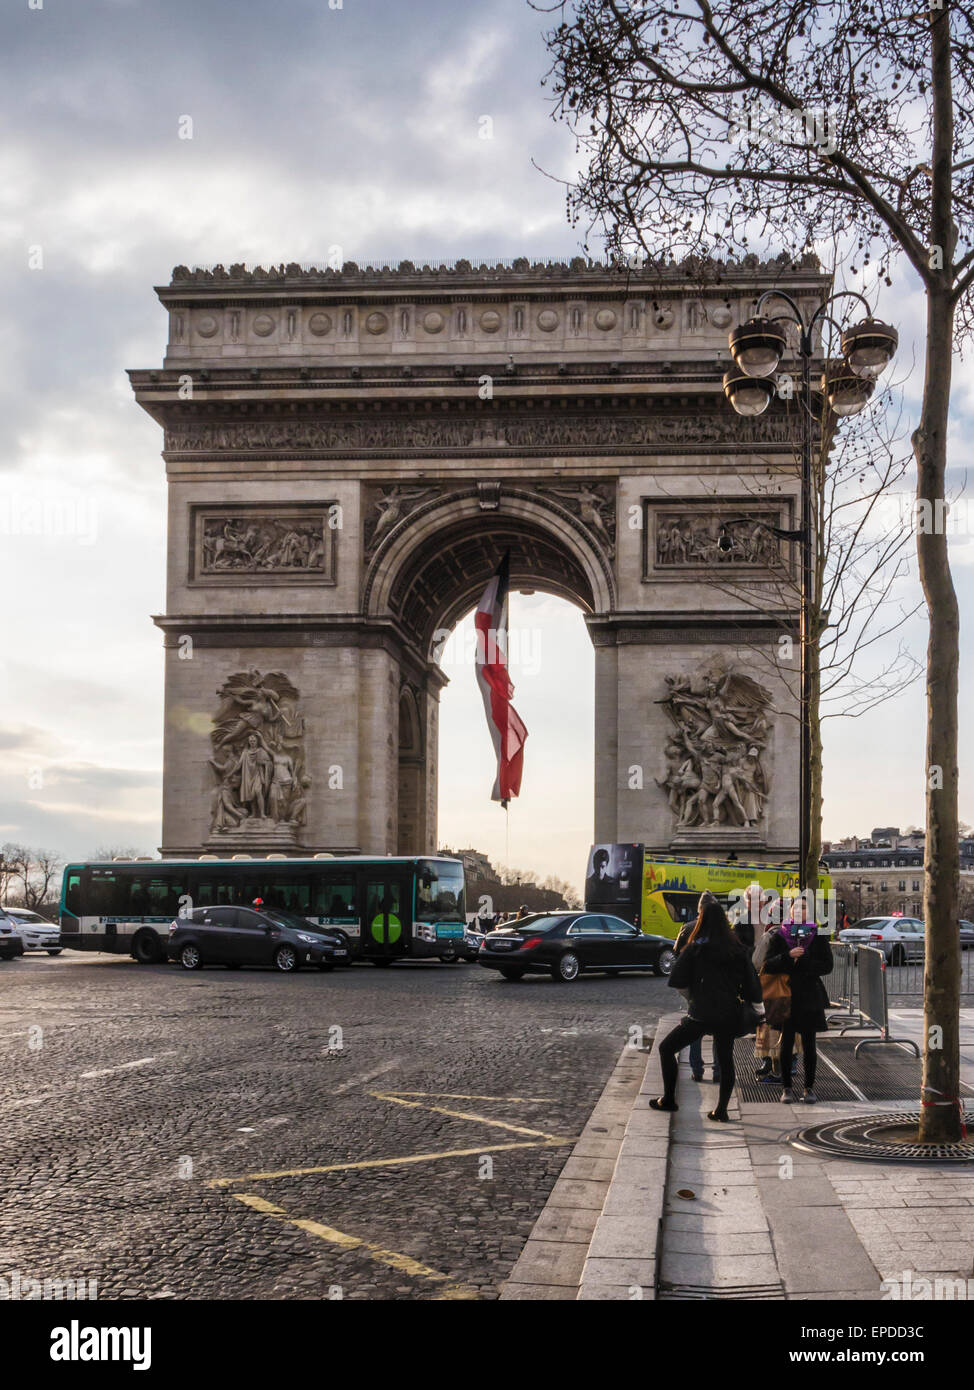 Arc de Triomphe de l'Etoile Champs Elysees in Paris. Tourists at Historic monument. Triumphal arch honours dead soldiers Stock Photo